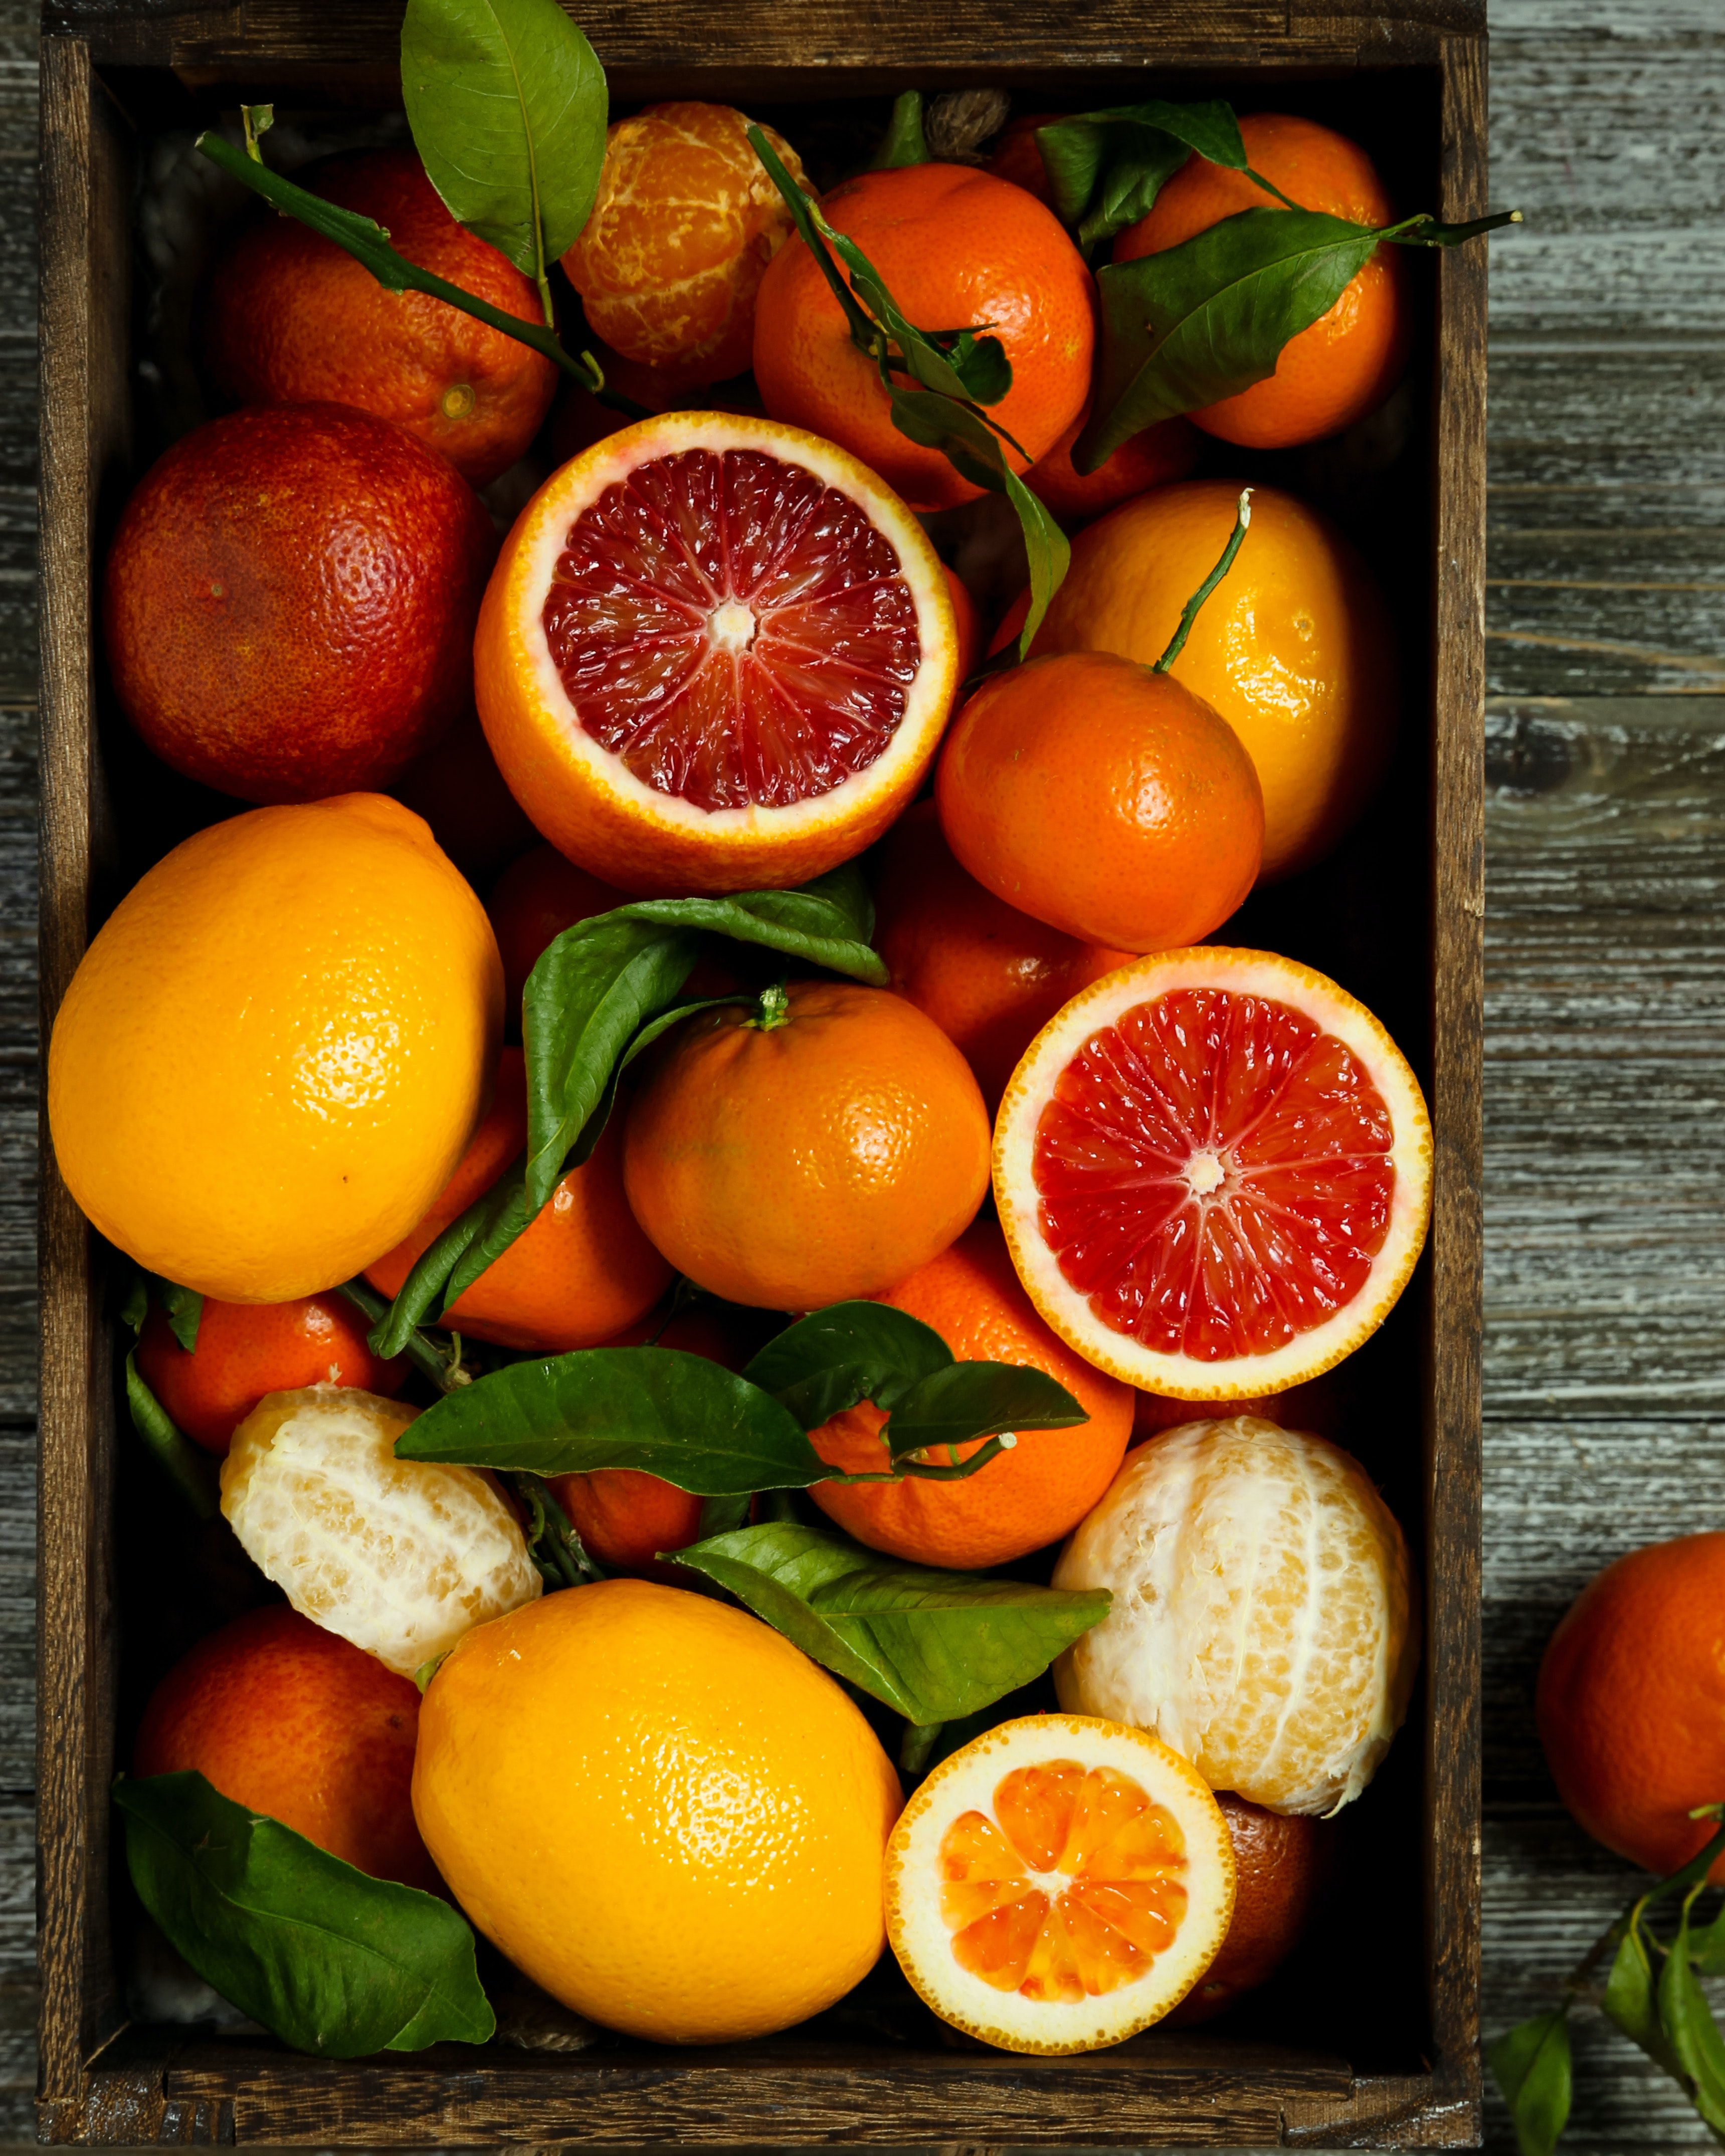 Wallpaper for mobile devices fruits, oranges, grapefruit, basket